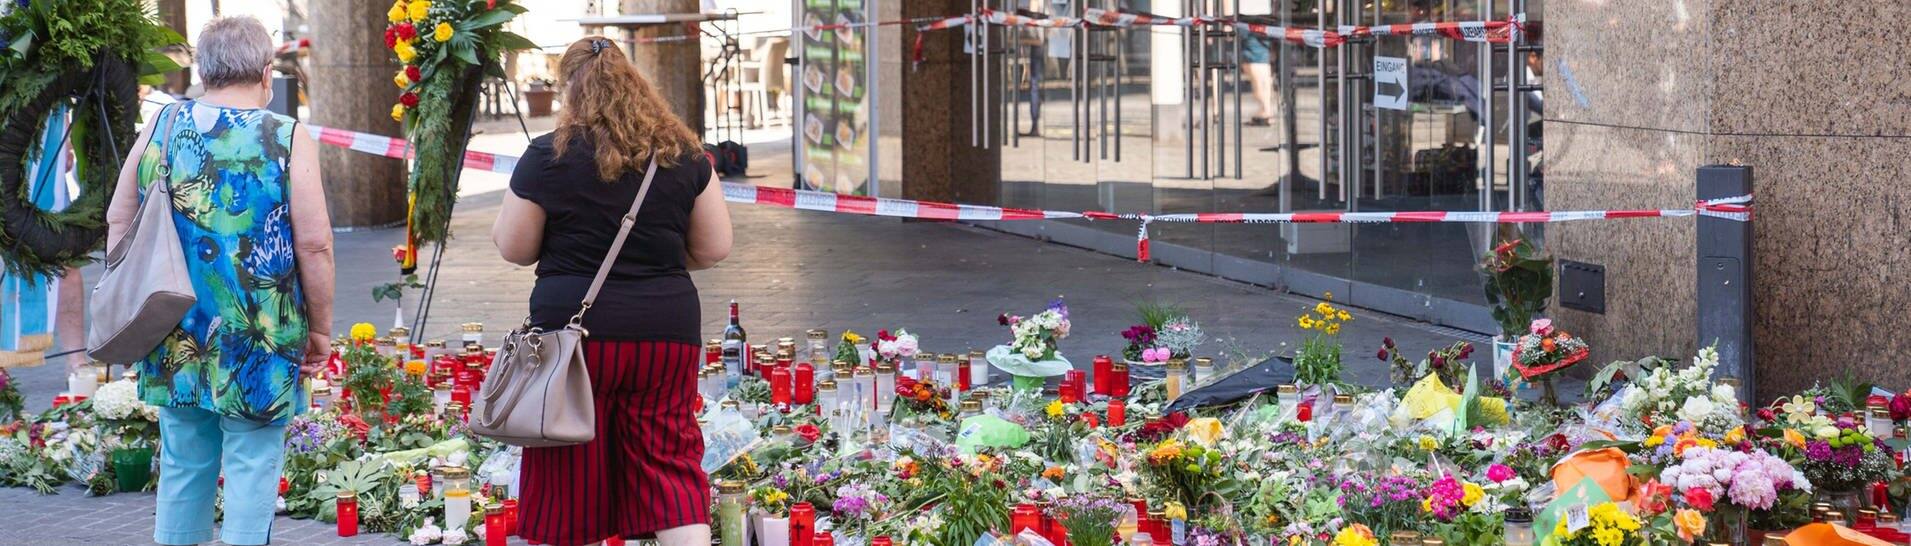 Trauerkerzen und Blumen liegen vor einem Kaufhaus in der Innenstadt, in dem ein Mann Menschen mit einem Messer attackiert hatte. Bei dem Angriff am 25.06.2021 hatte ein Somalier drei Frauen in einem Kaufhaus getötet.